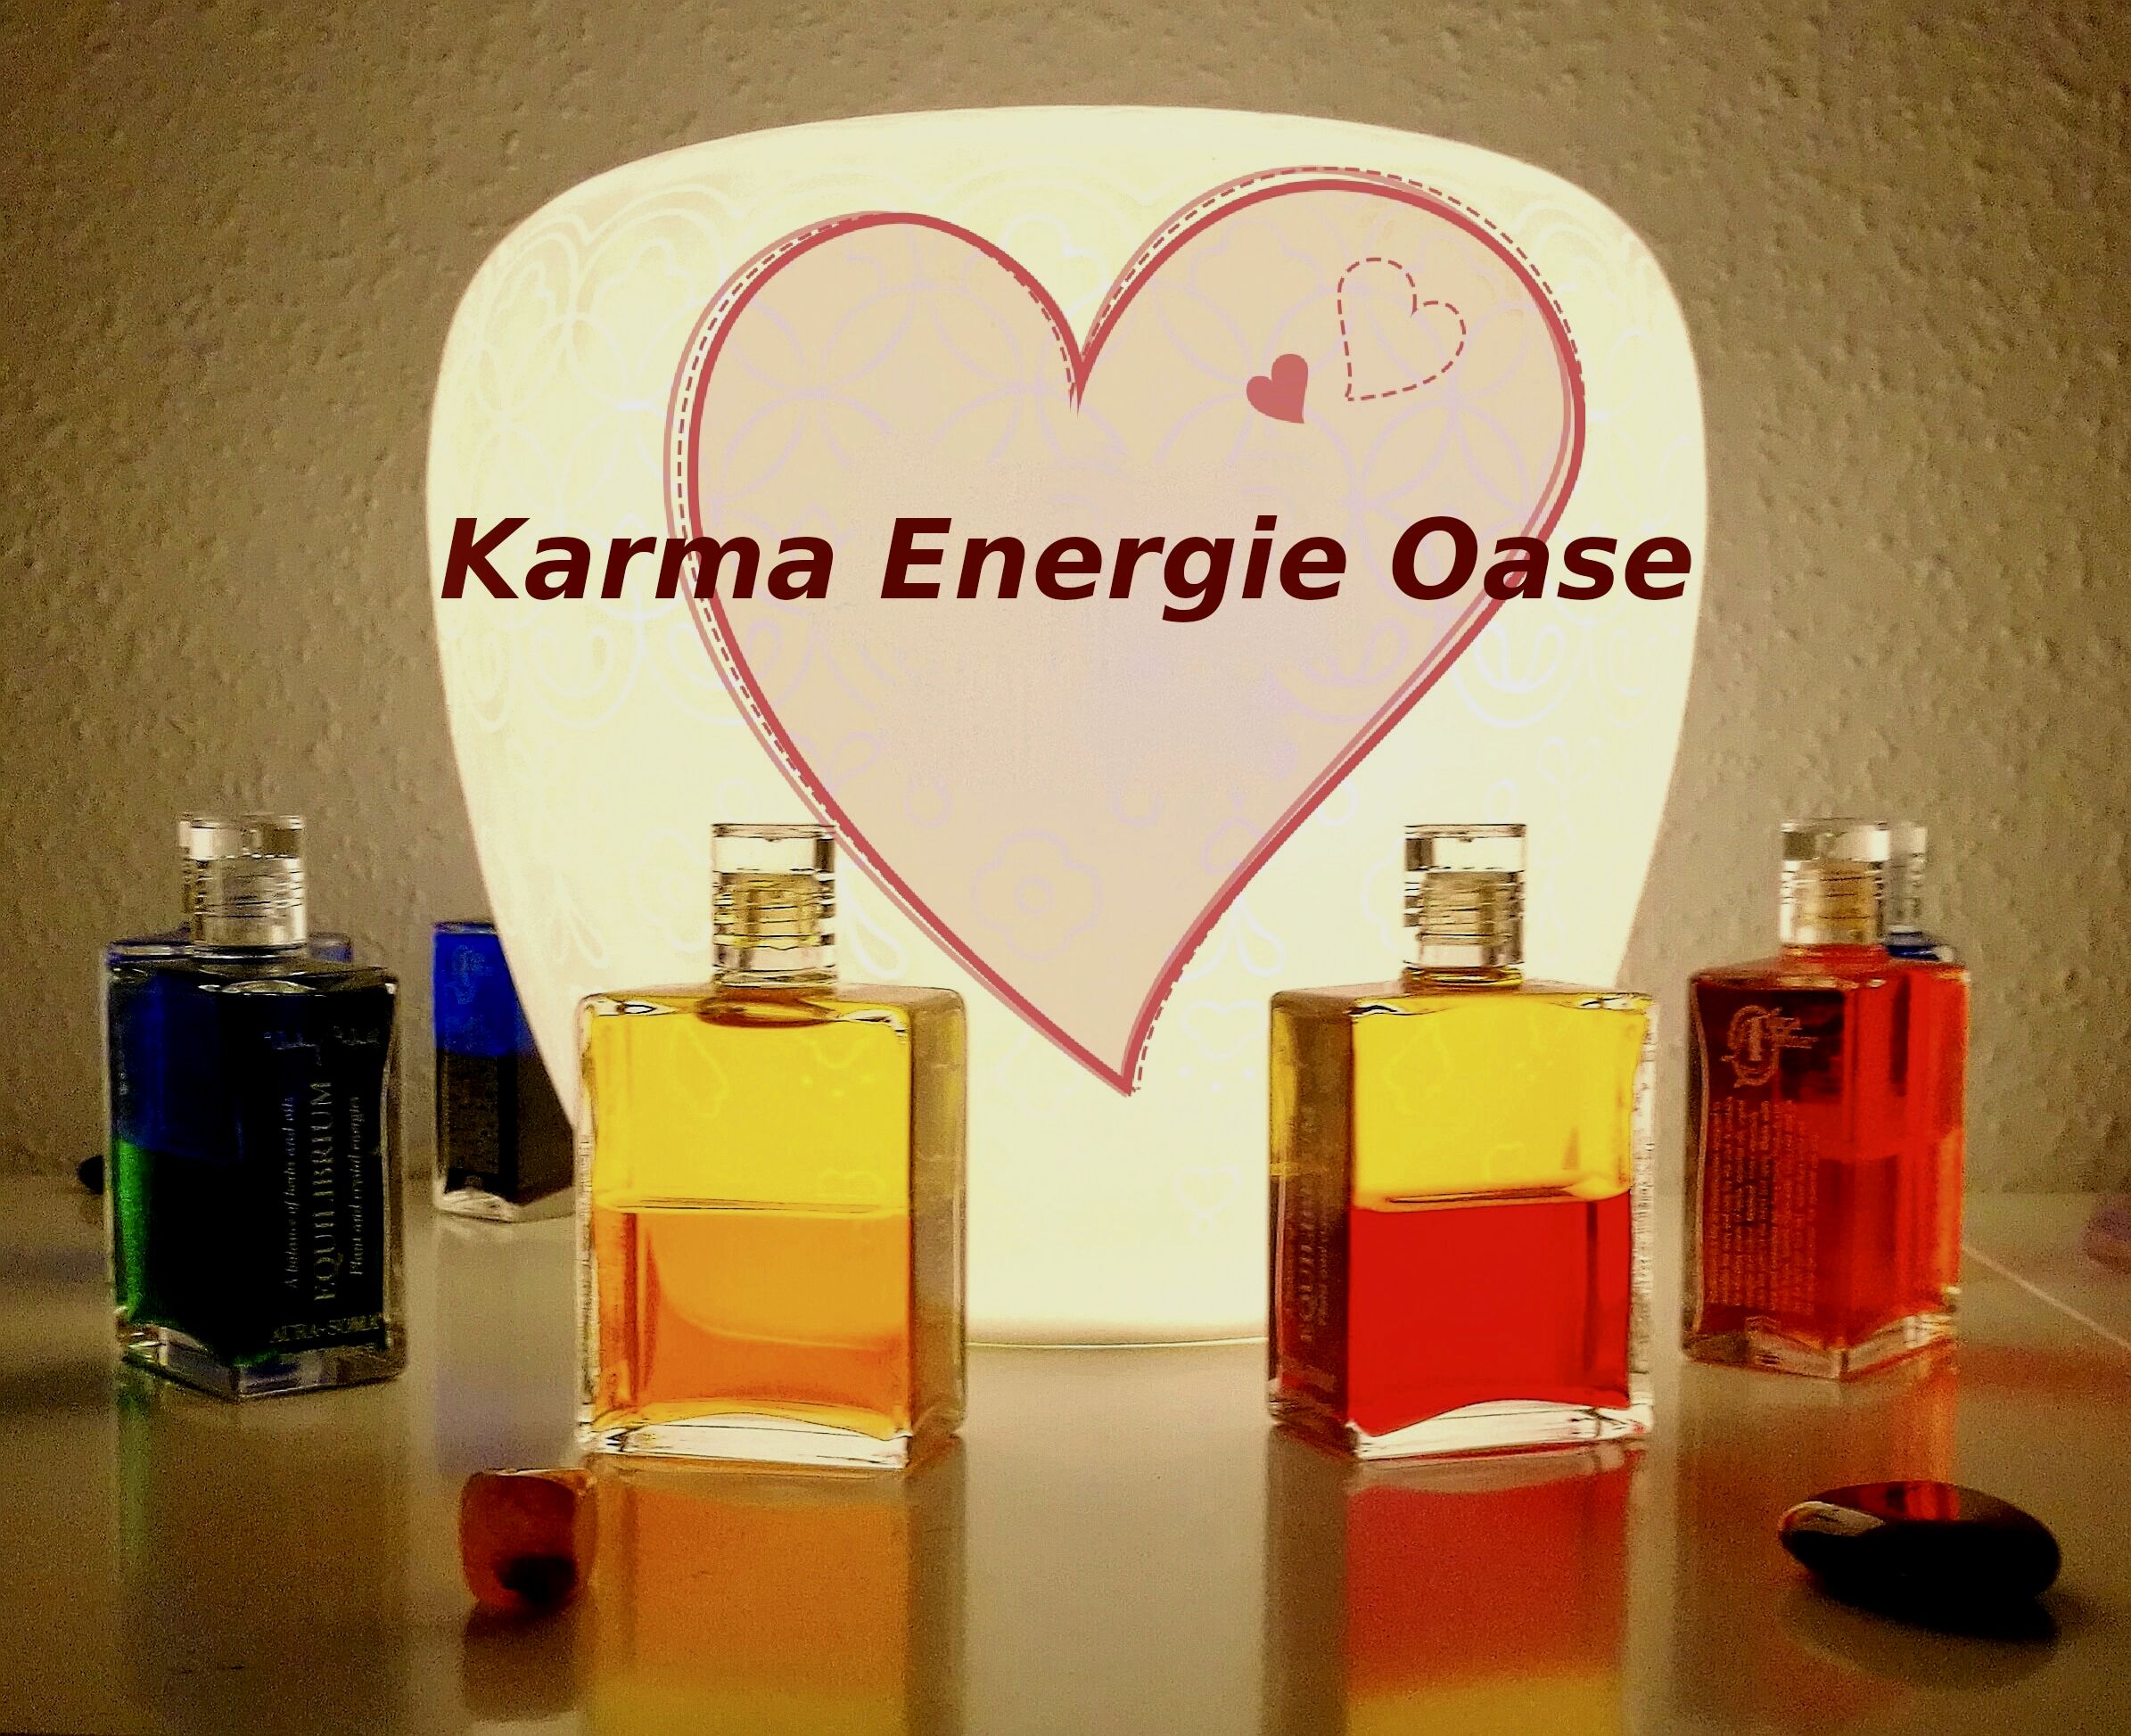 Karma Energie Oase